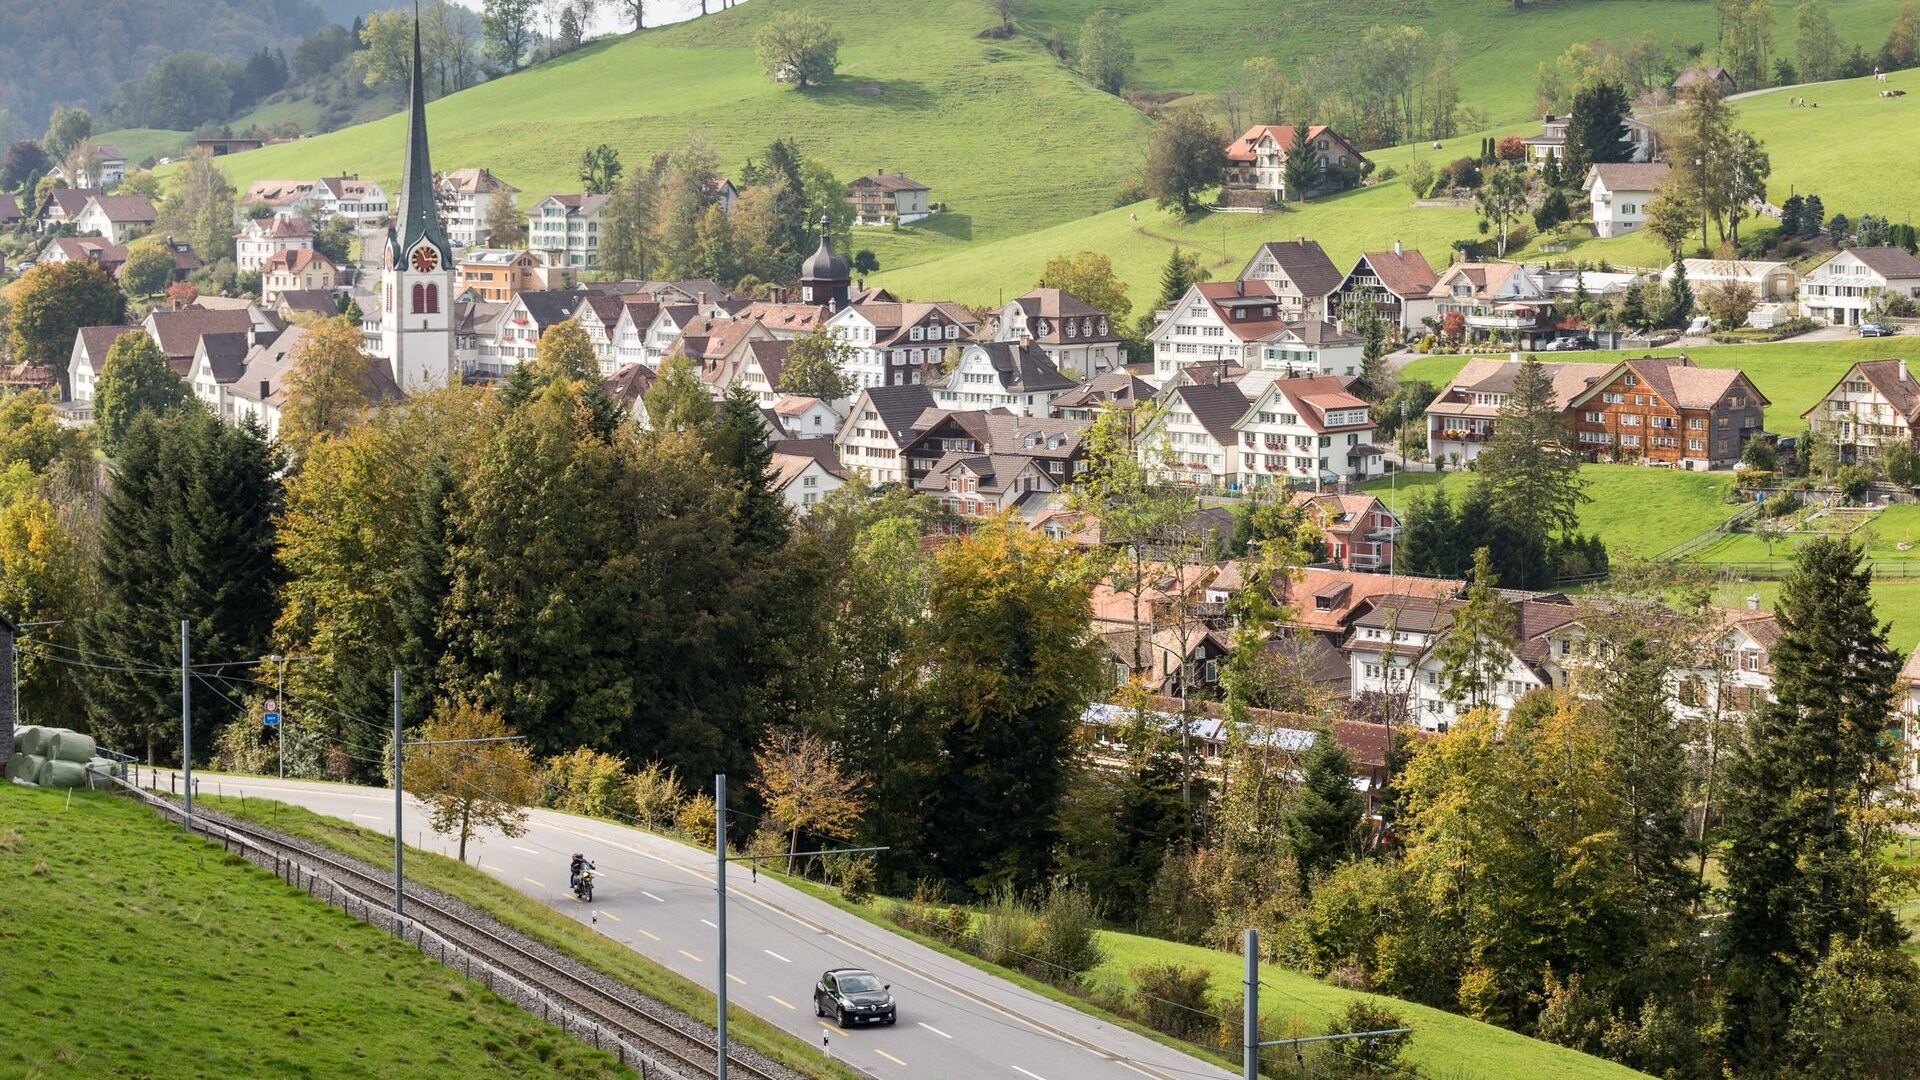 Një përmbledhje e komunës së Gais në Appenzell Ausserrhoden